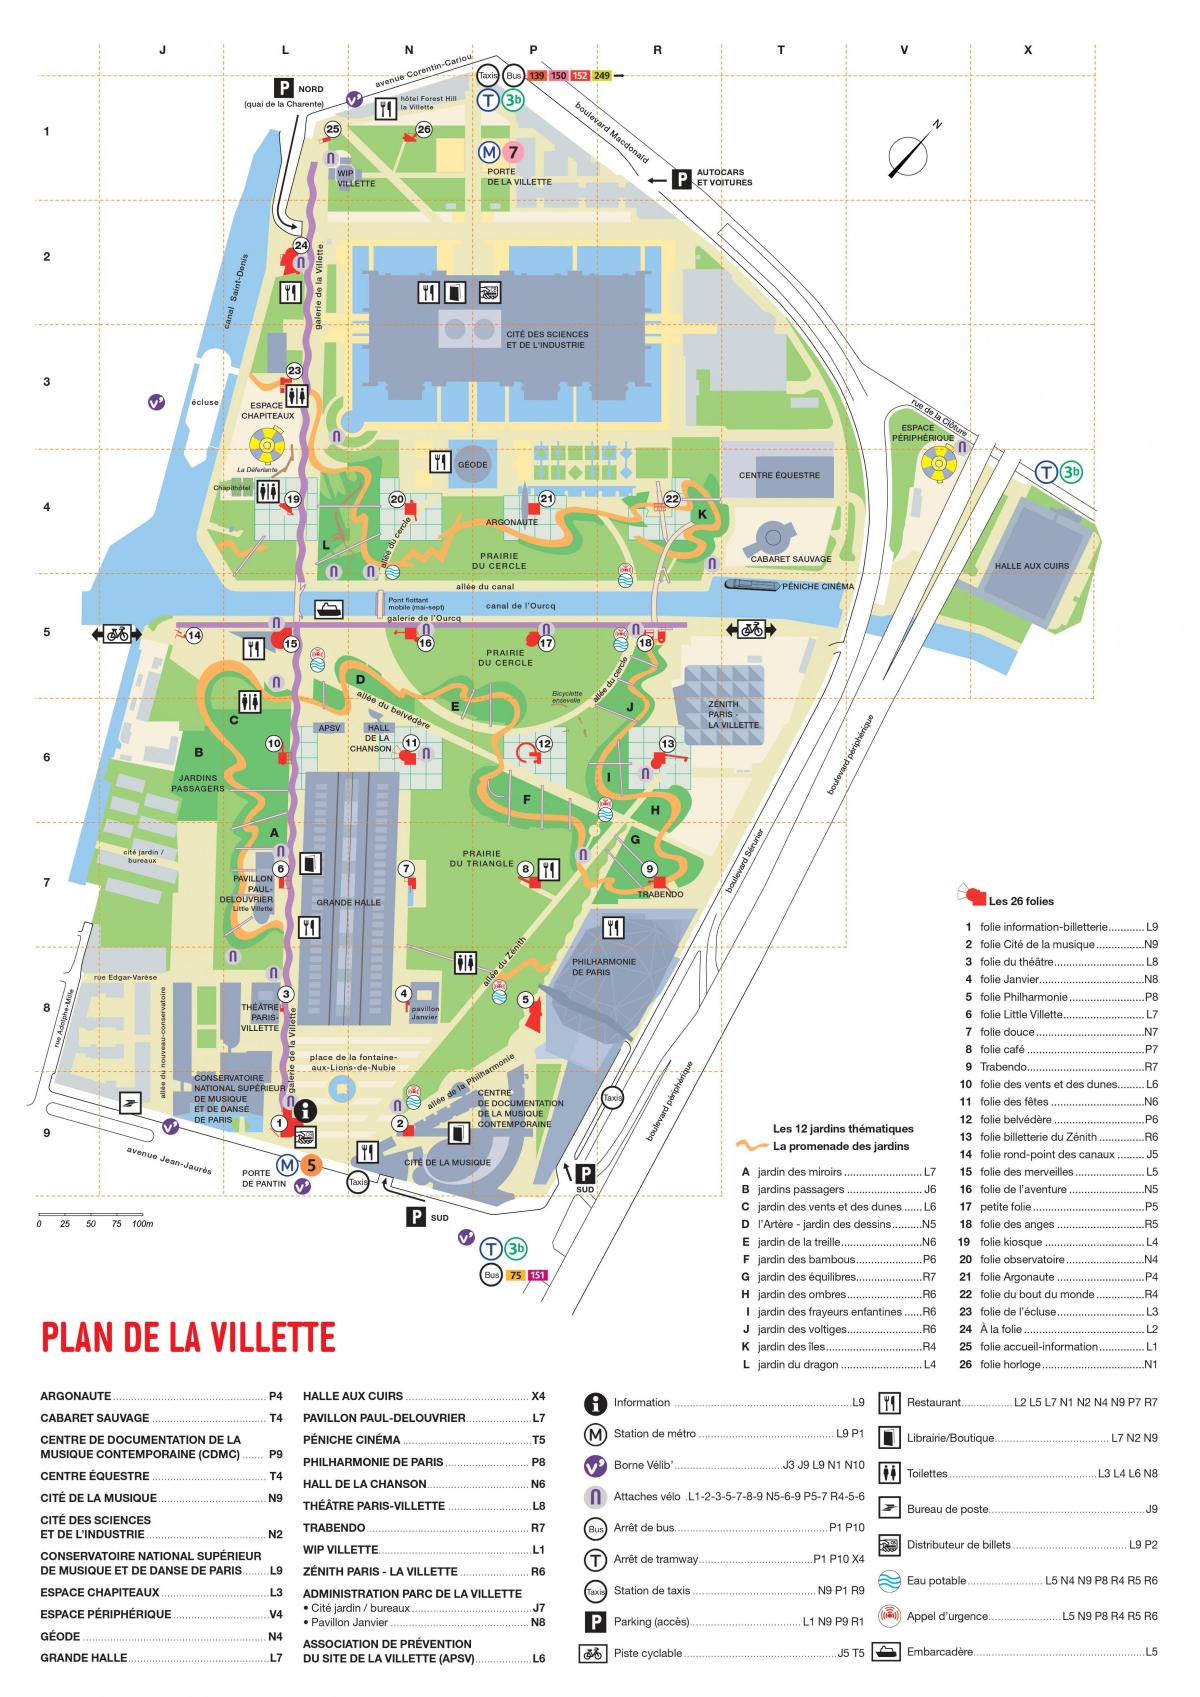 Χάρτης του Parc de la Villette